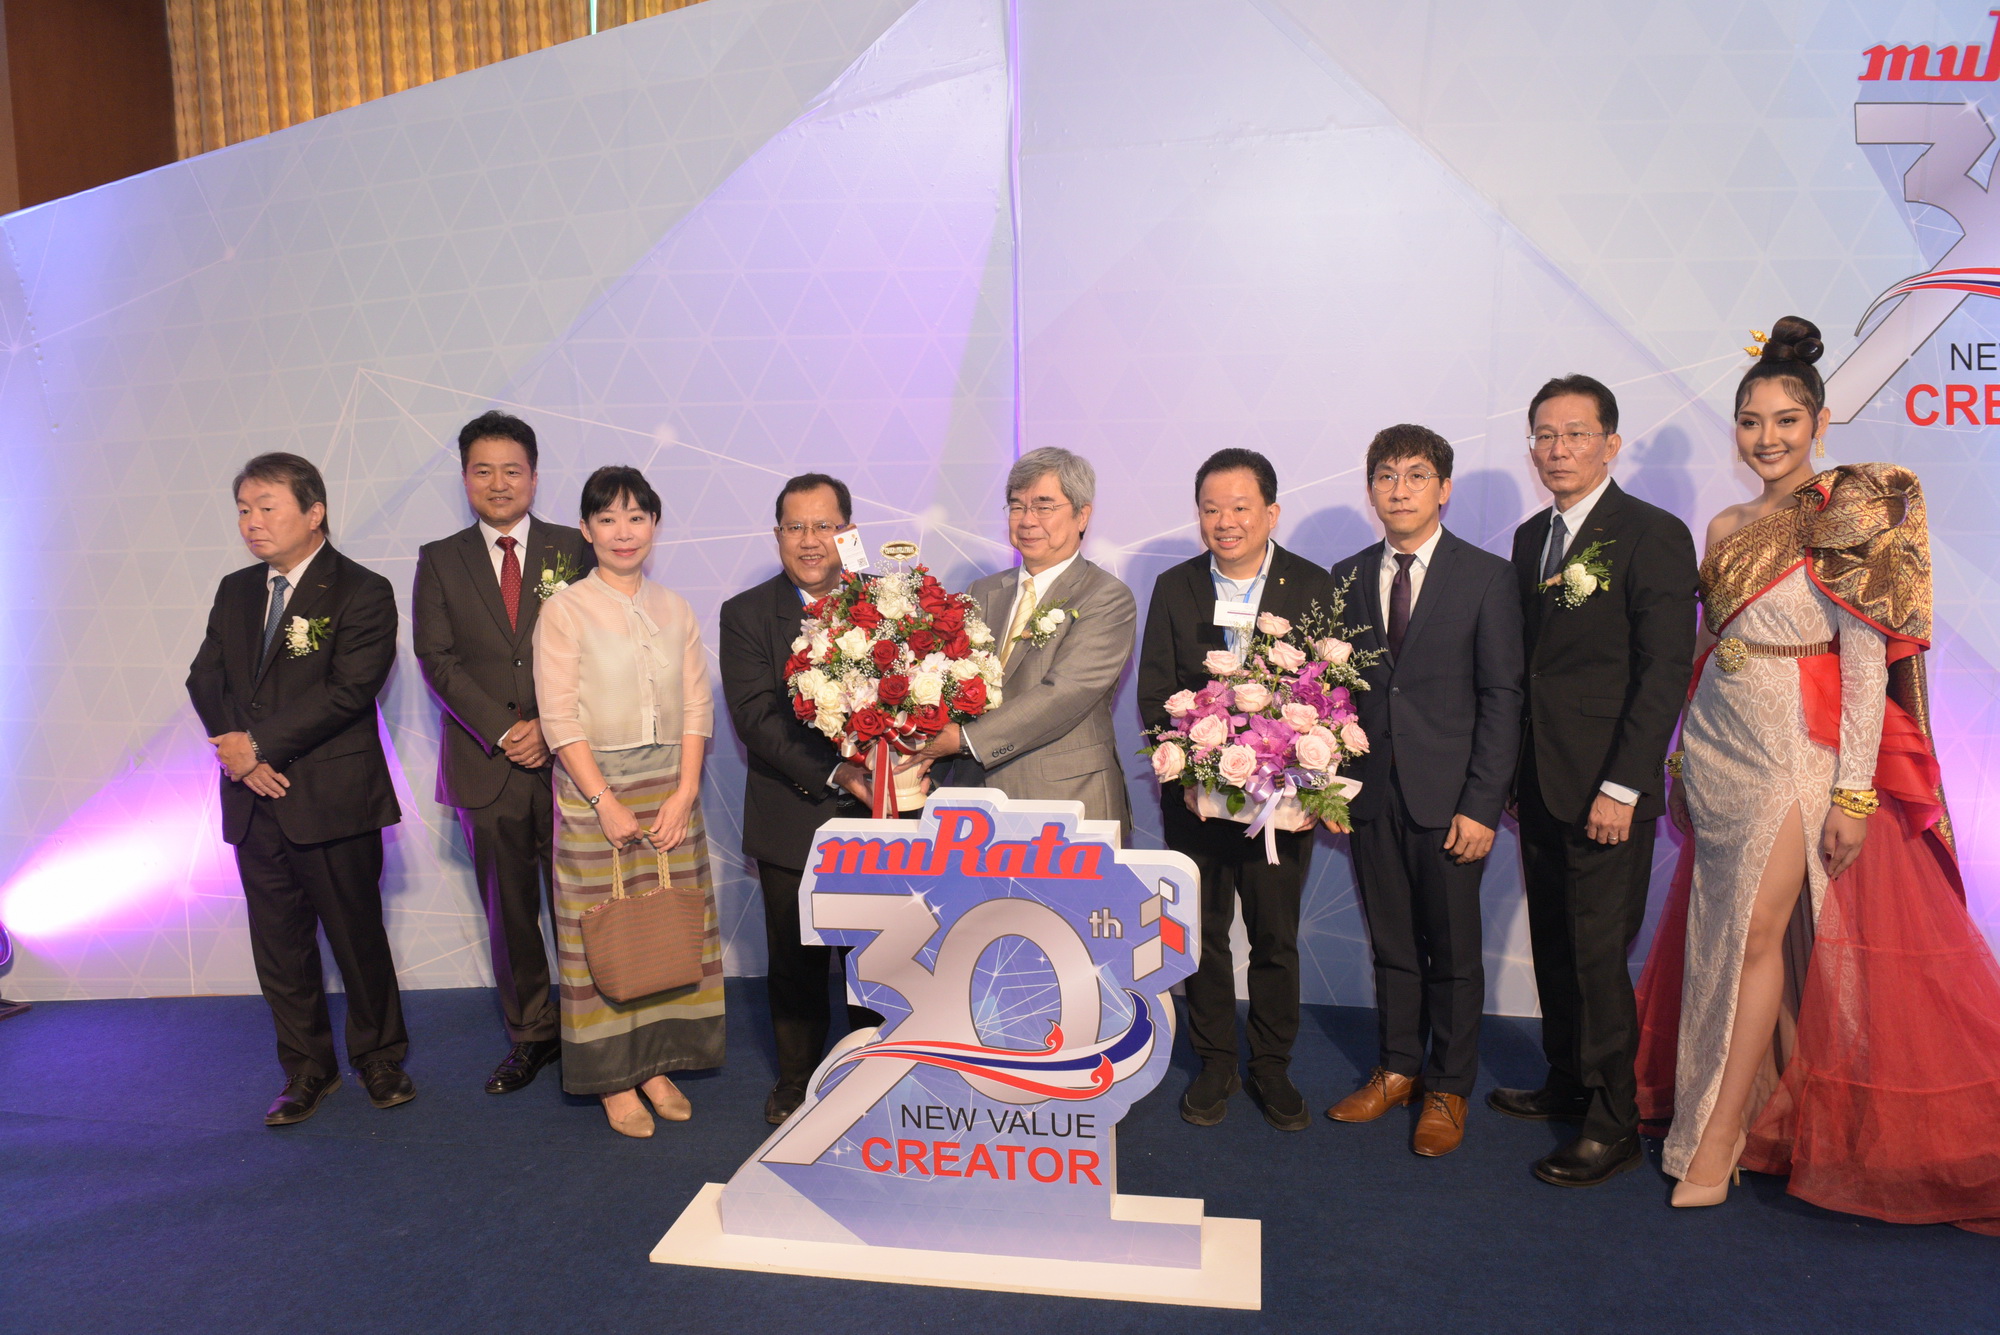 เชียงใหม่  ///  ร่วมแสดงความยินดี ในโอกาสครบรอบ 30 ปี แห่งการก่อตั้ง บริษัท มูราตะ อิเล็กทรอนิกส์ (ประเทศไทย) จํากัด